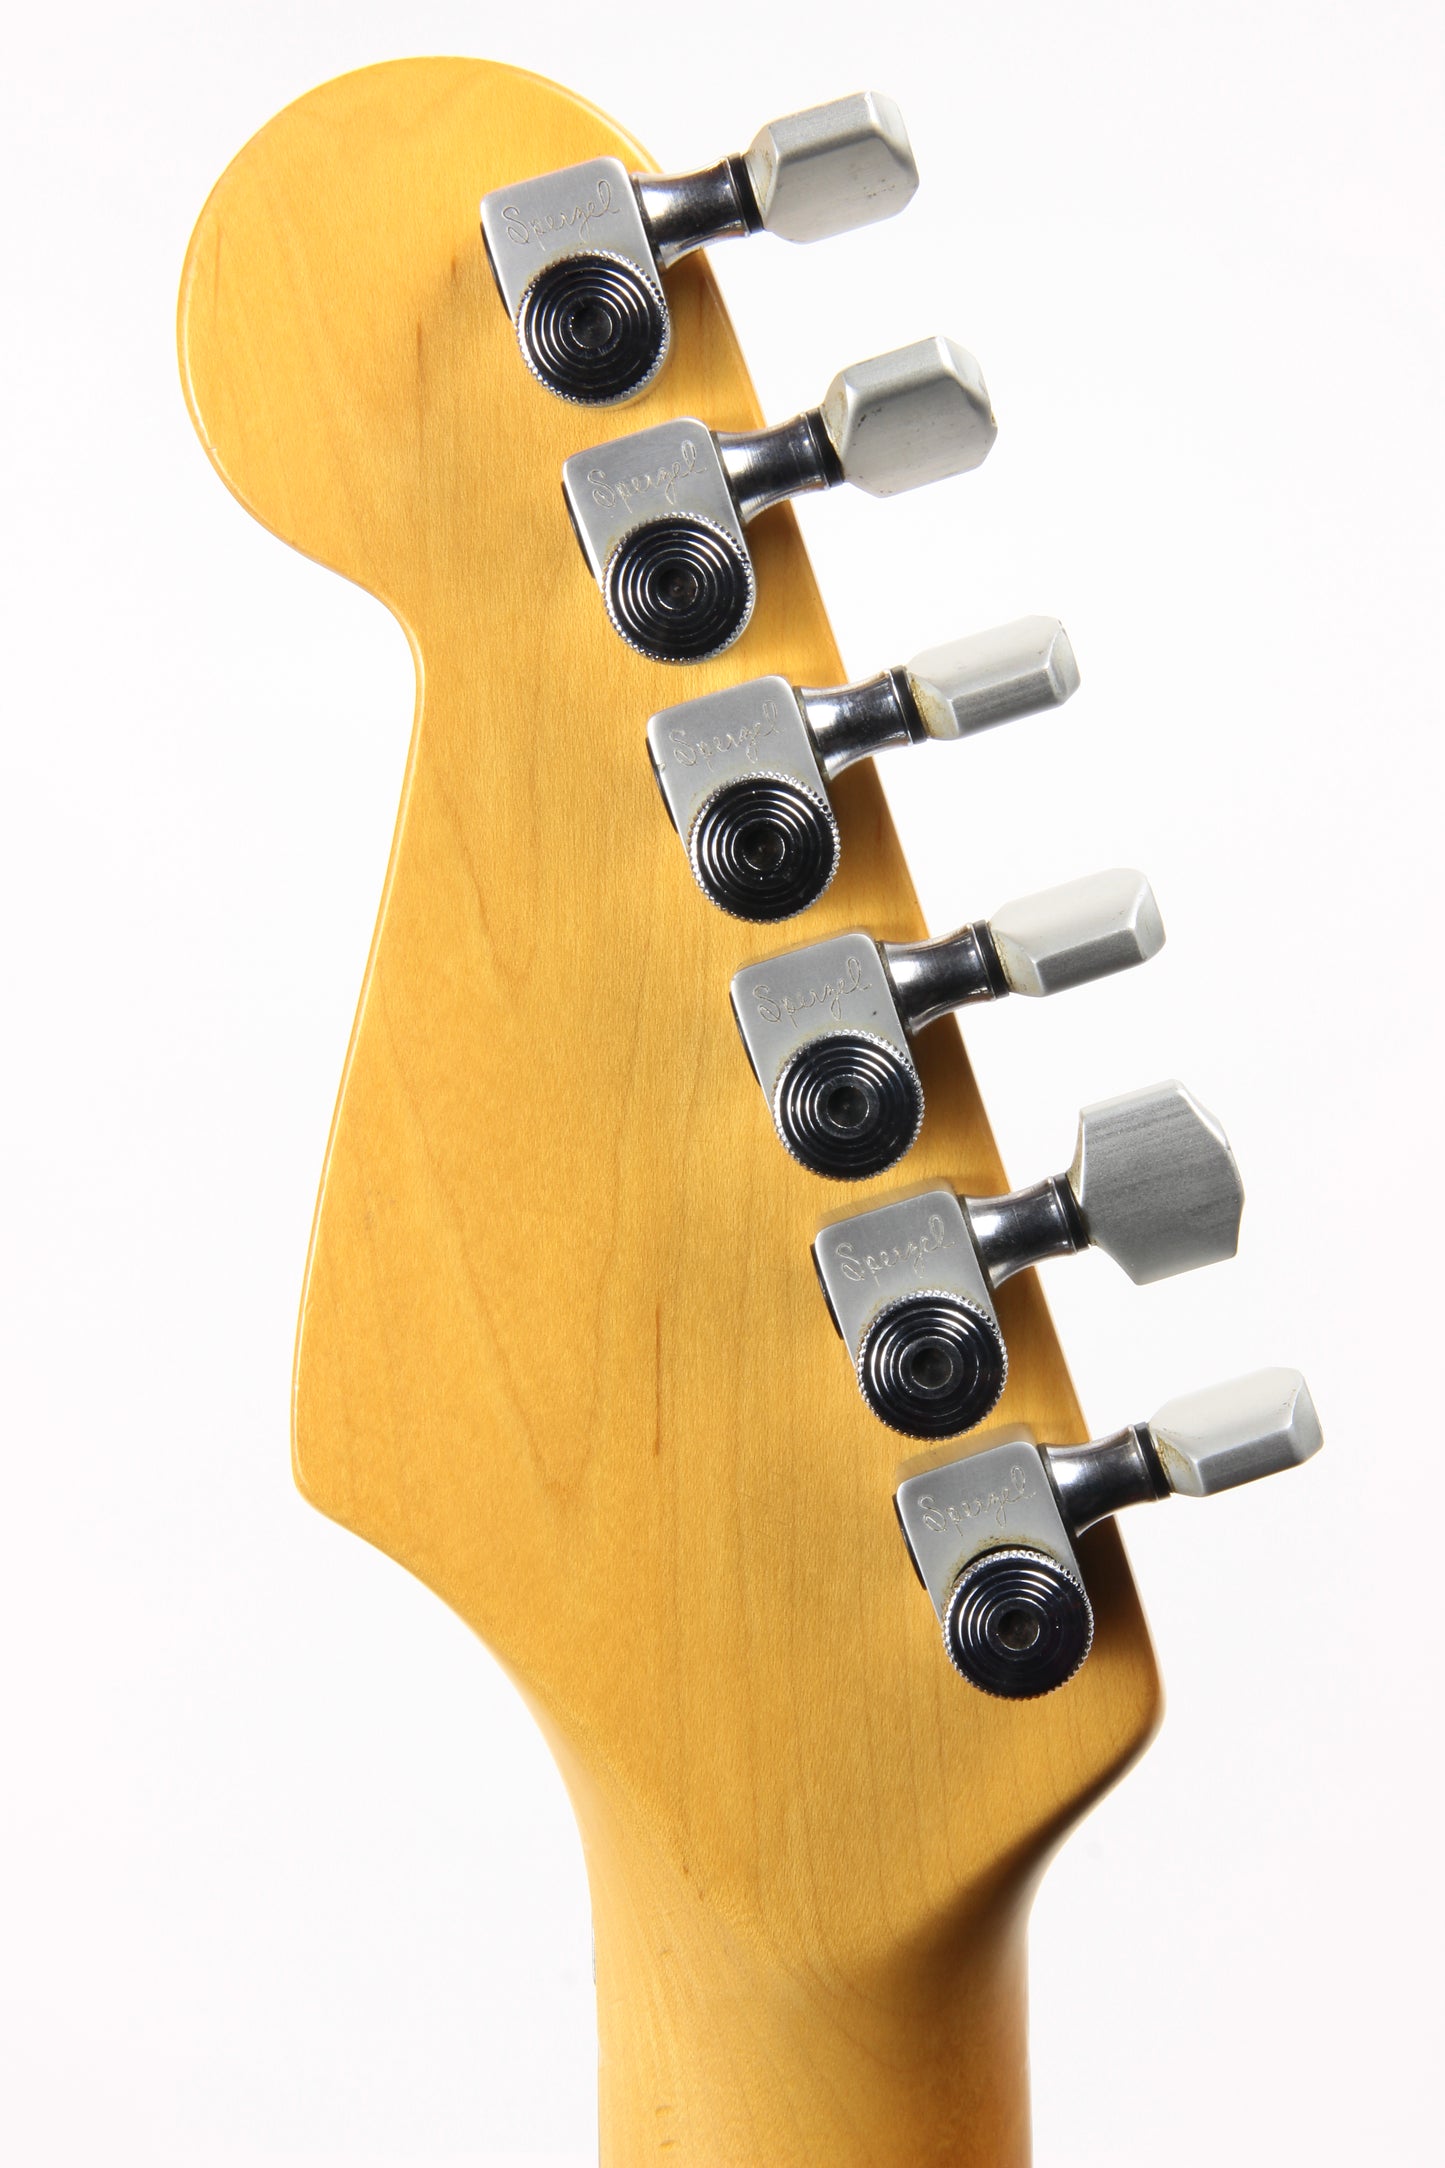 1988 Fender American Stratocaster Strat Plus Razz Berry USA - Rare Color - ala John Mayer